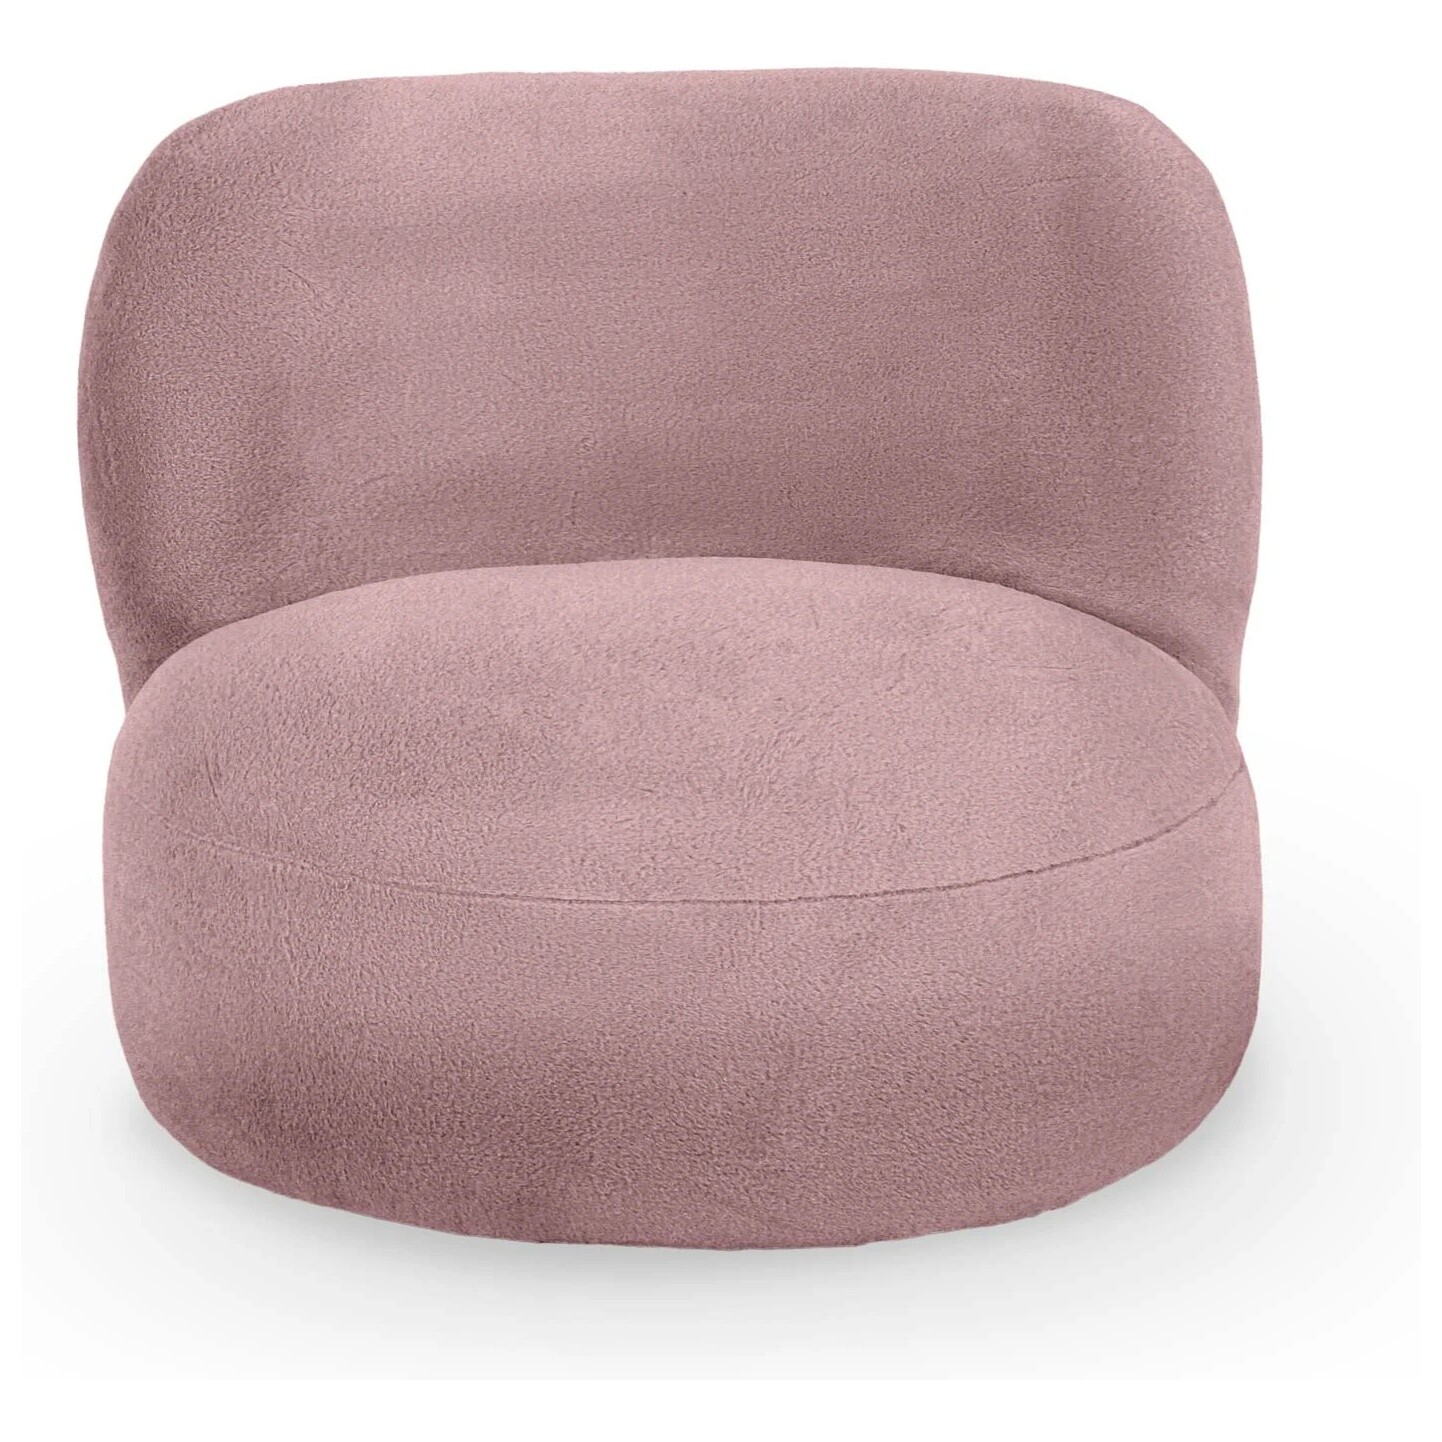 Кресло мягкое круглое без ножек искусственный мех розовое Patti 127-7 pi k